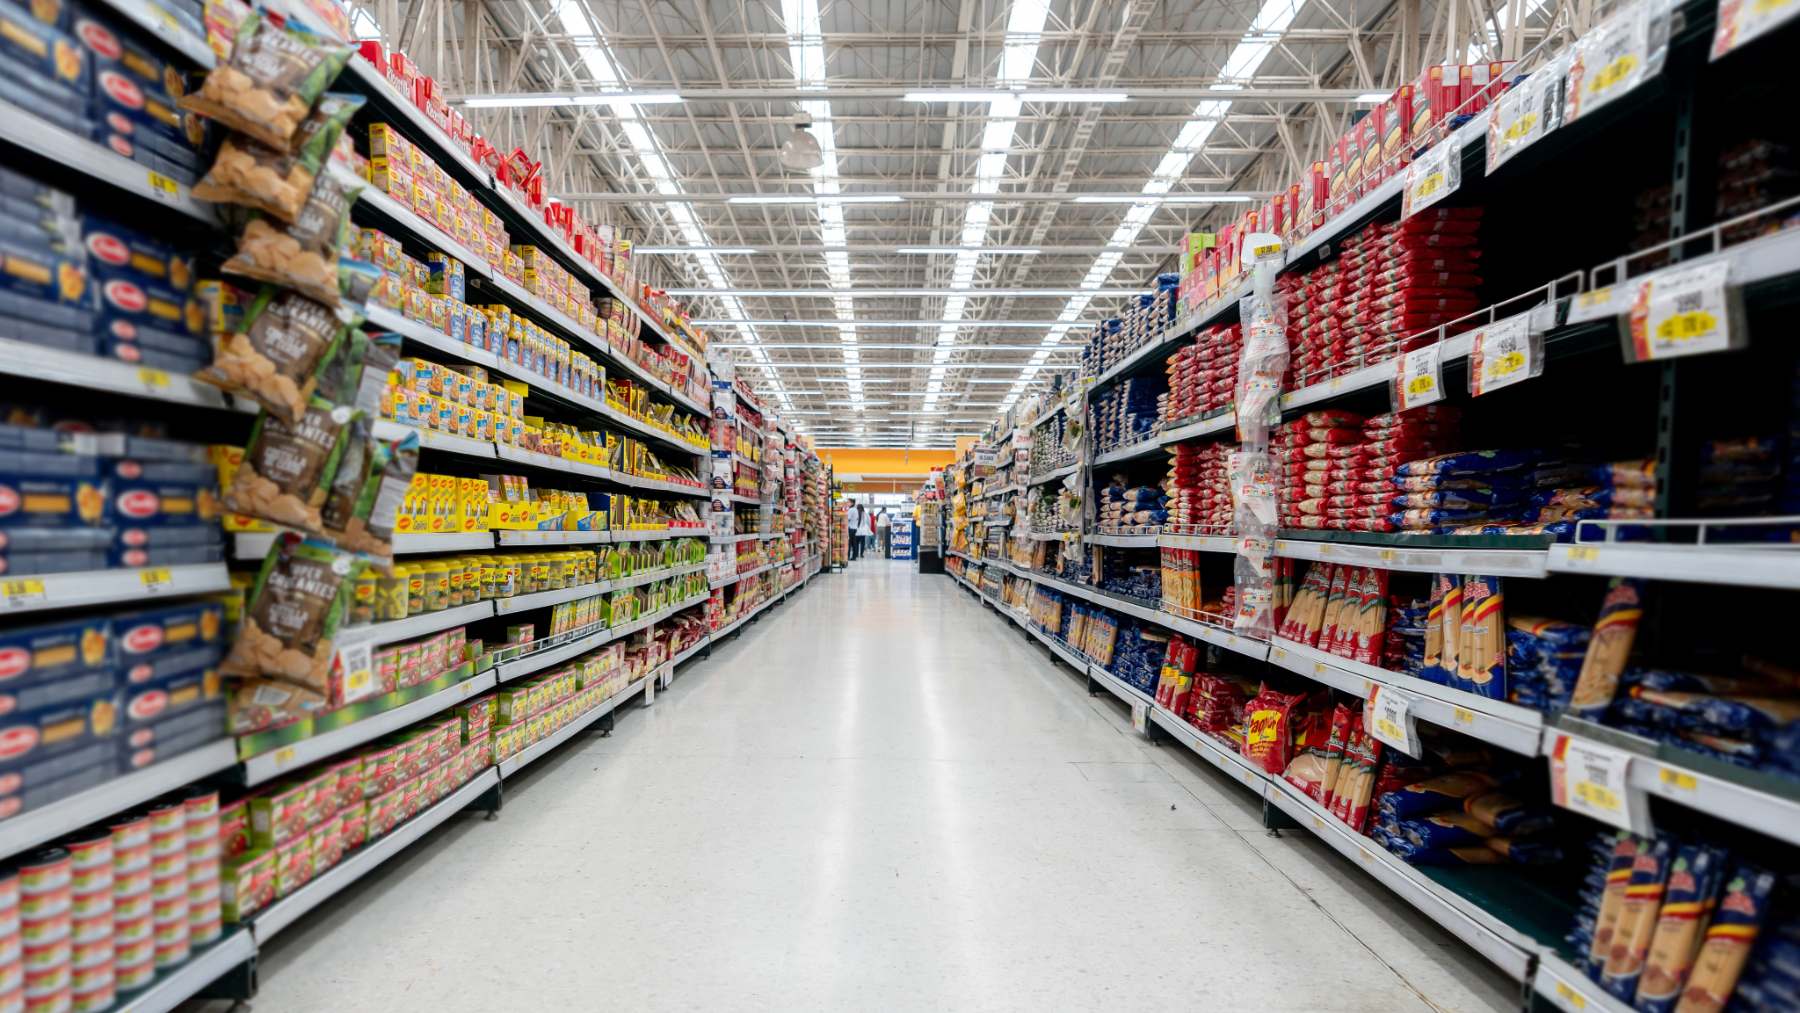 El supermercado Día lanza una nueva web de última tecnología para potenciar  su venta online